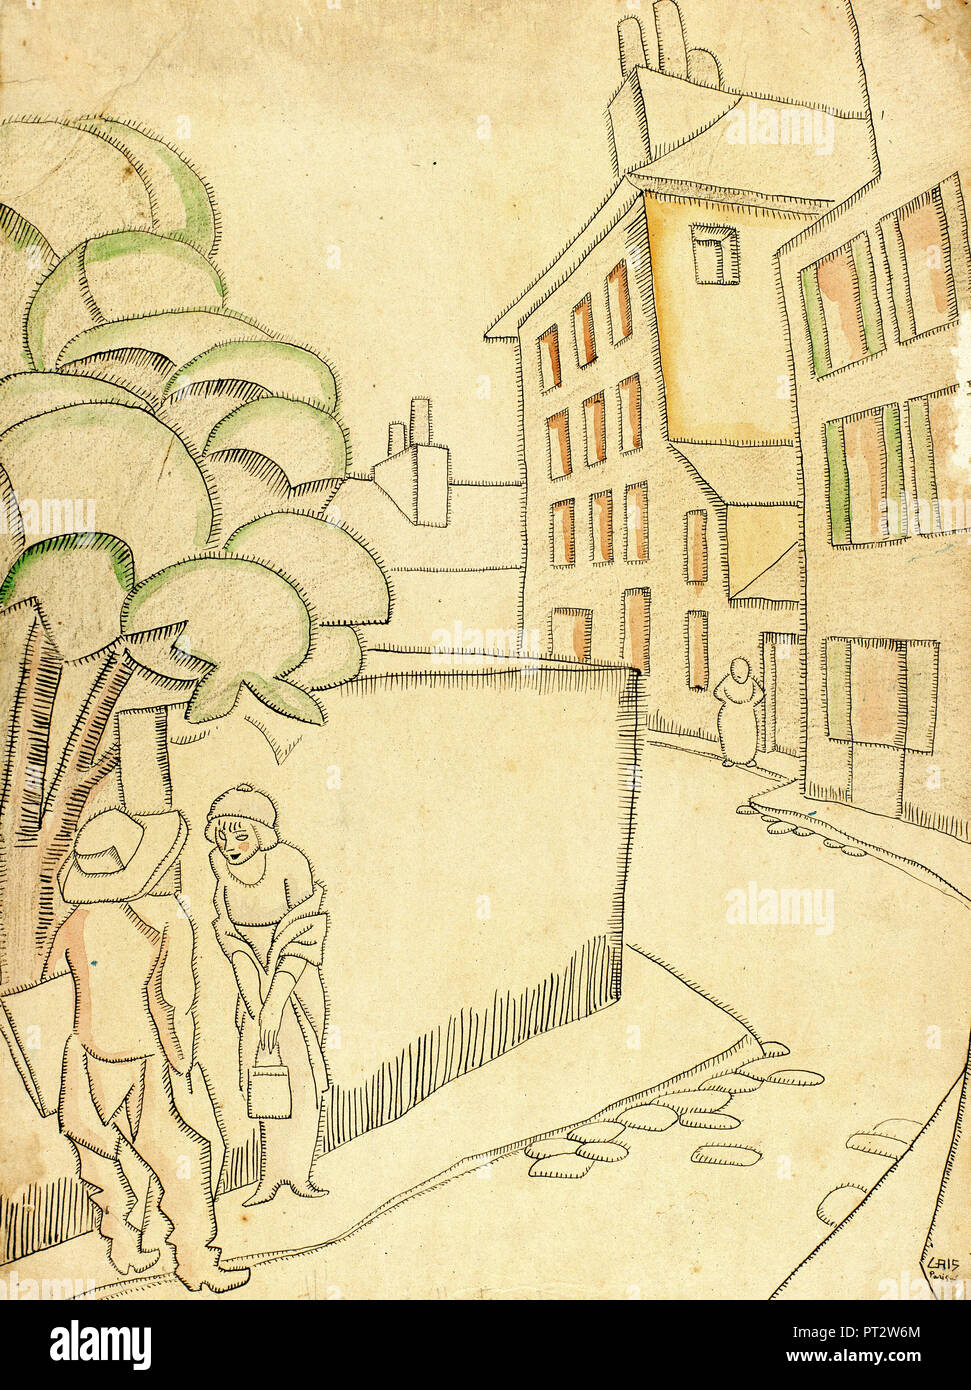 Juan Gris, une rue de Montmartre 1911 Plume et encre, aquarelle et fusain sur papier, Museu Nacional d'Art de Catalunya, Barcelone, Espagne. Banque D'Images